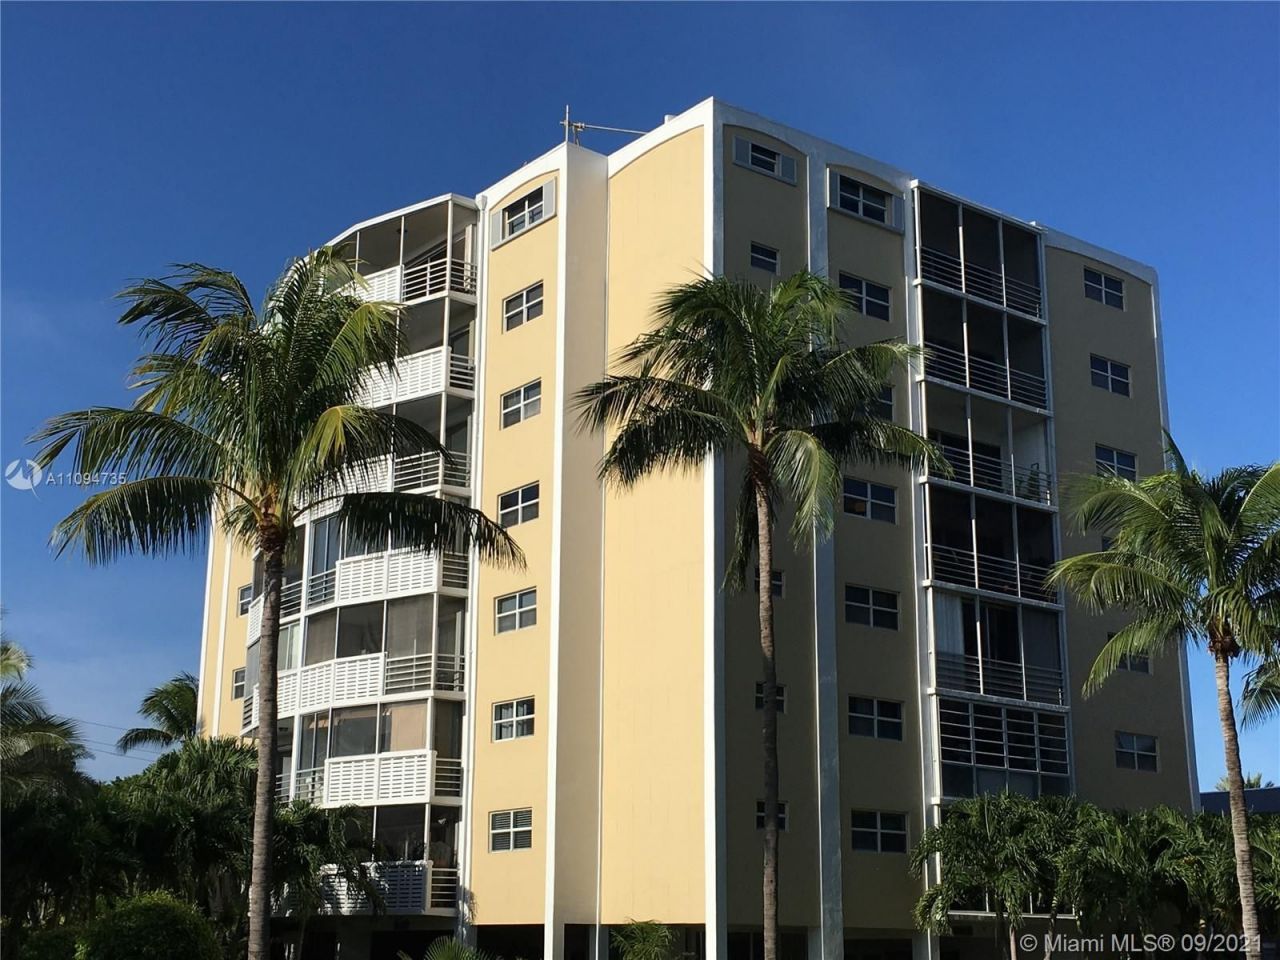 Apartment in Miami, USA, 97 sq.m - picture 1